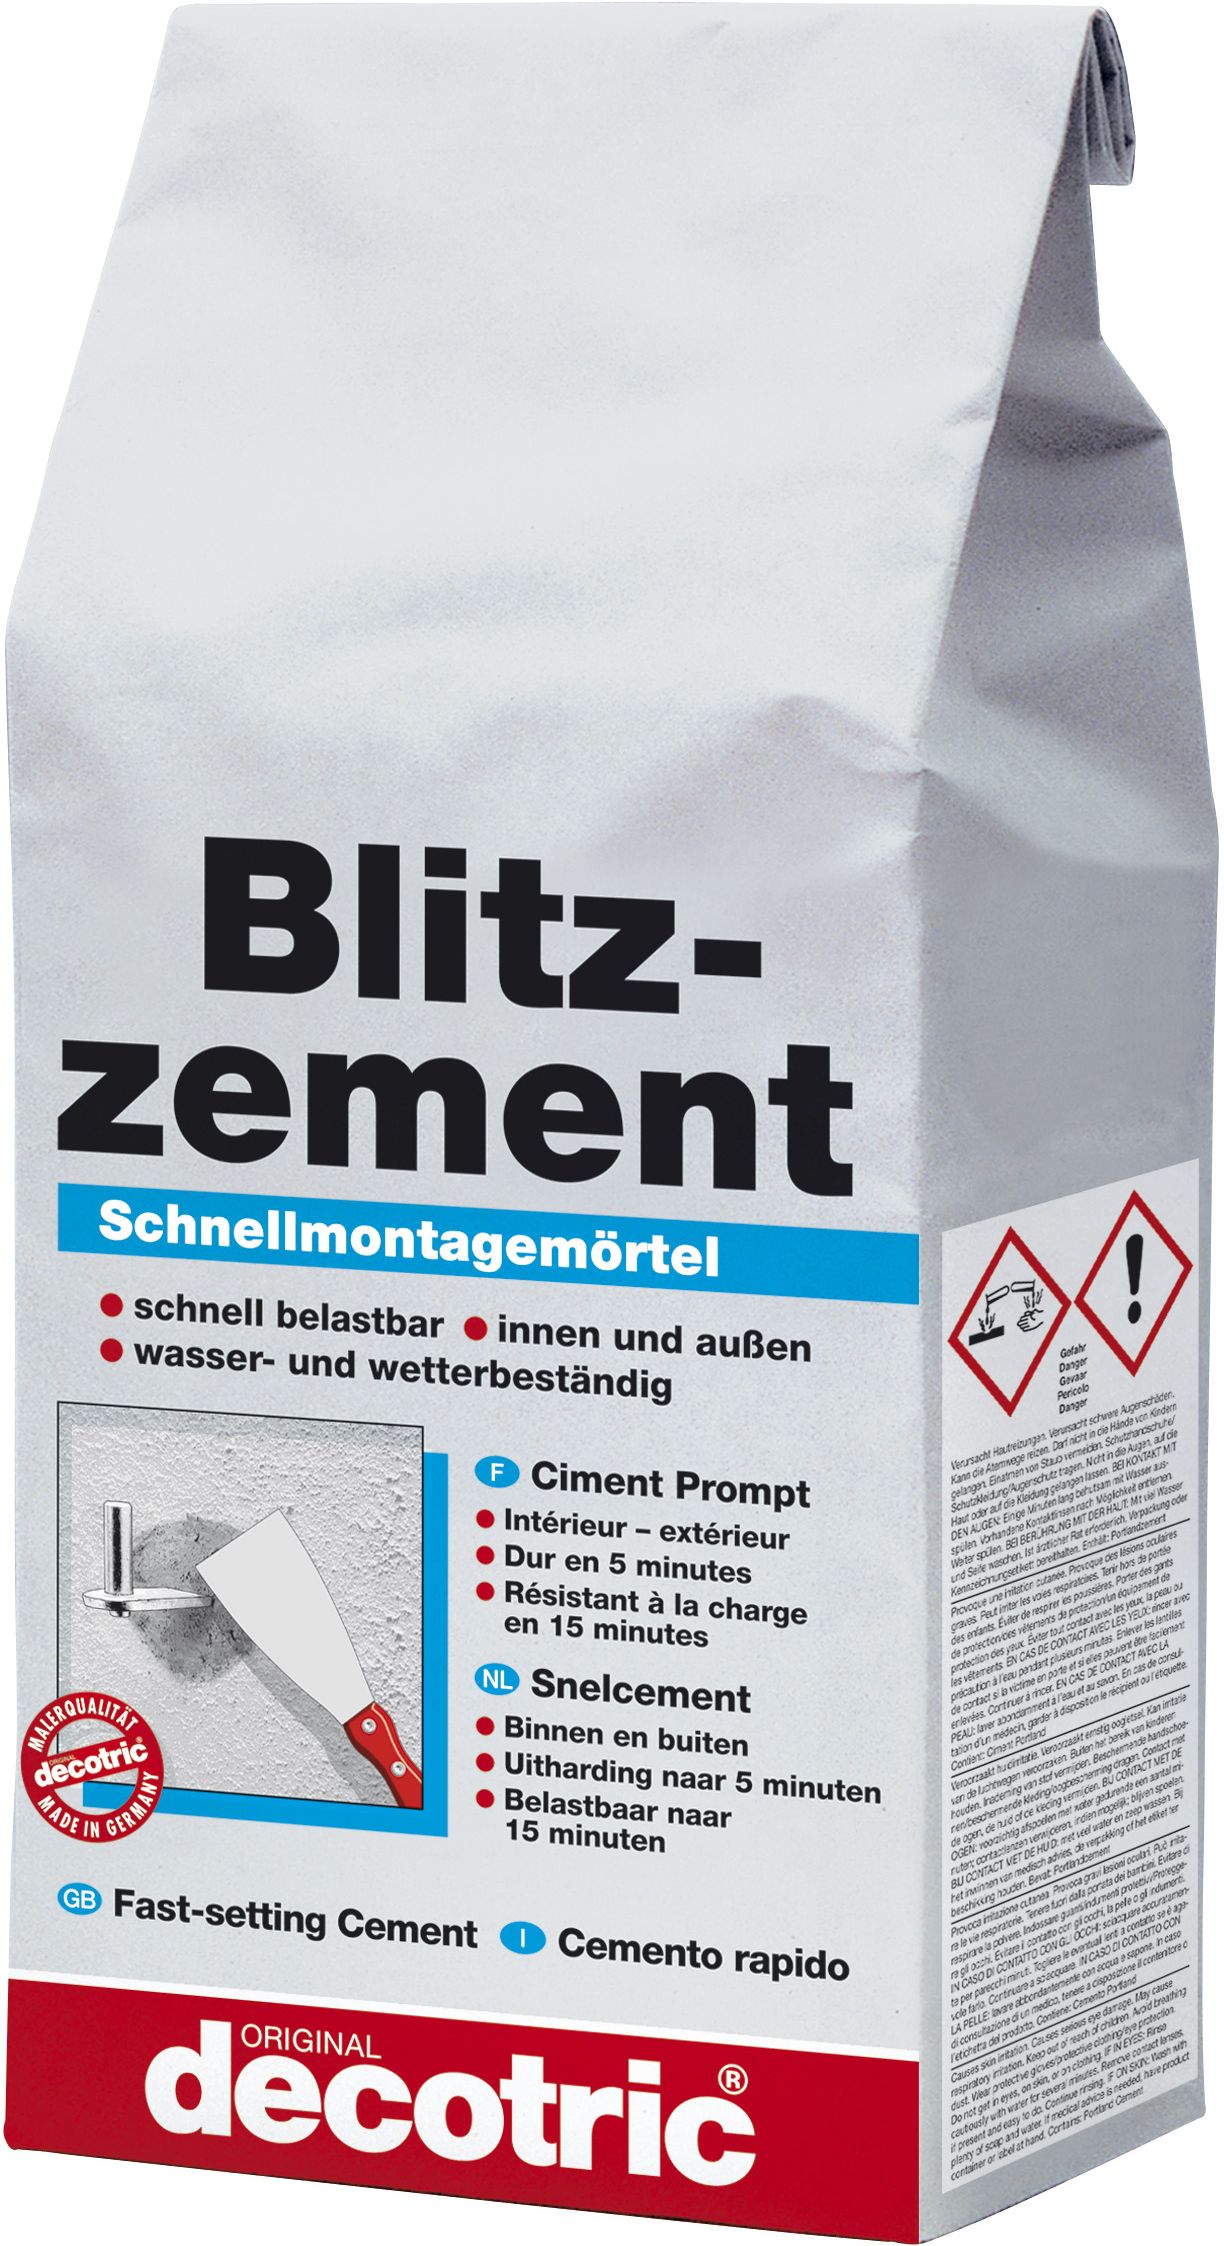 decotric - Ciment Prompt - 5 Kg